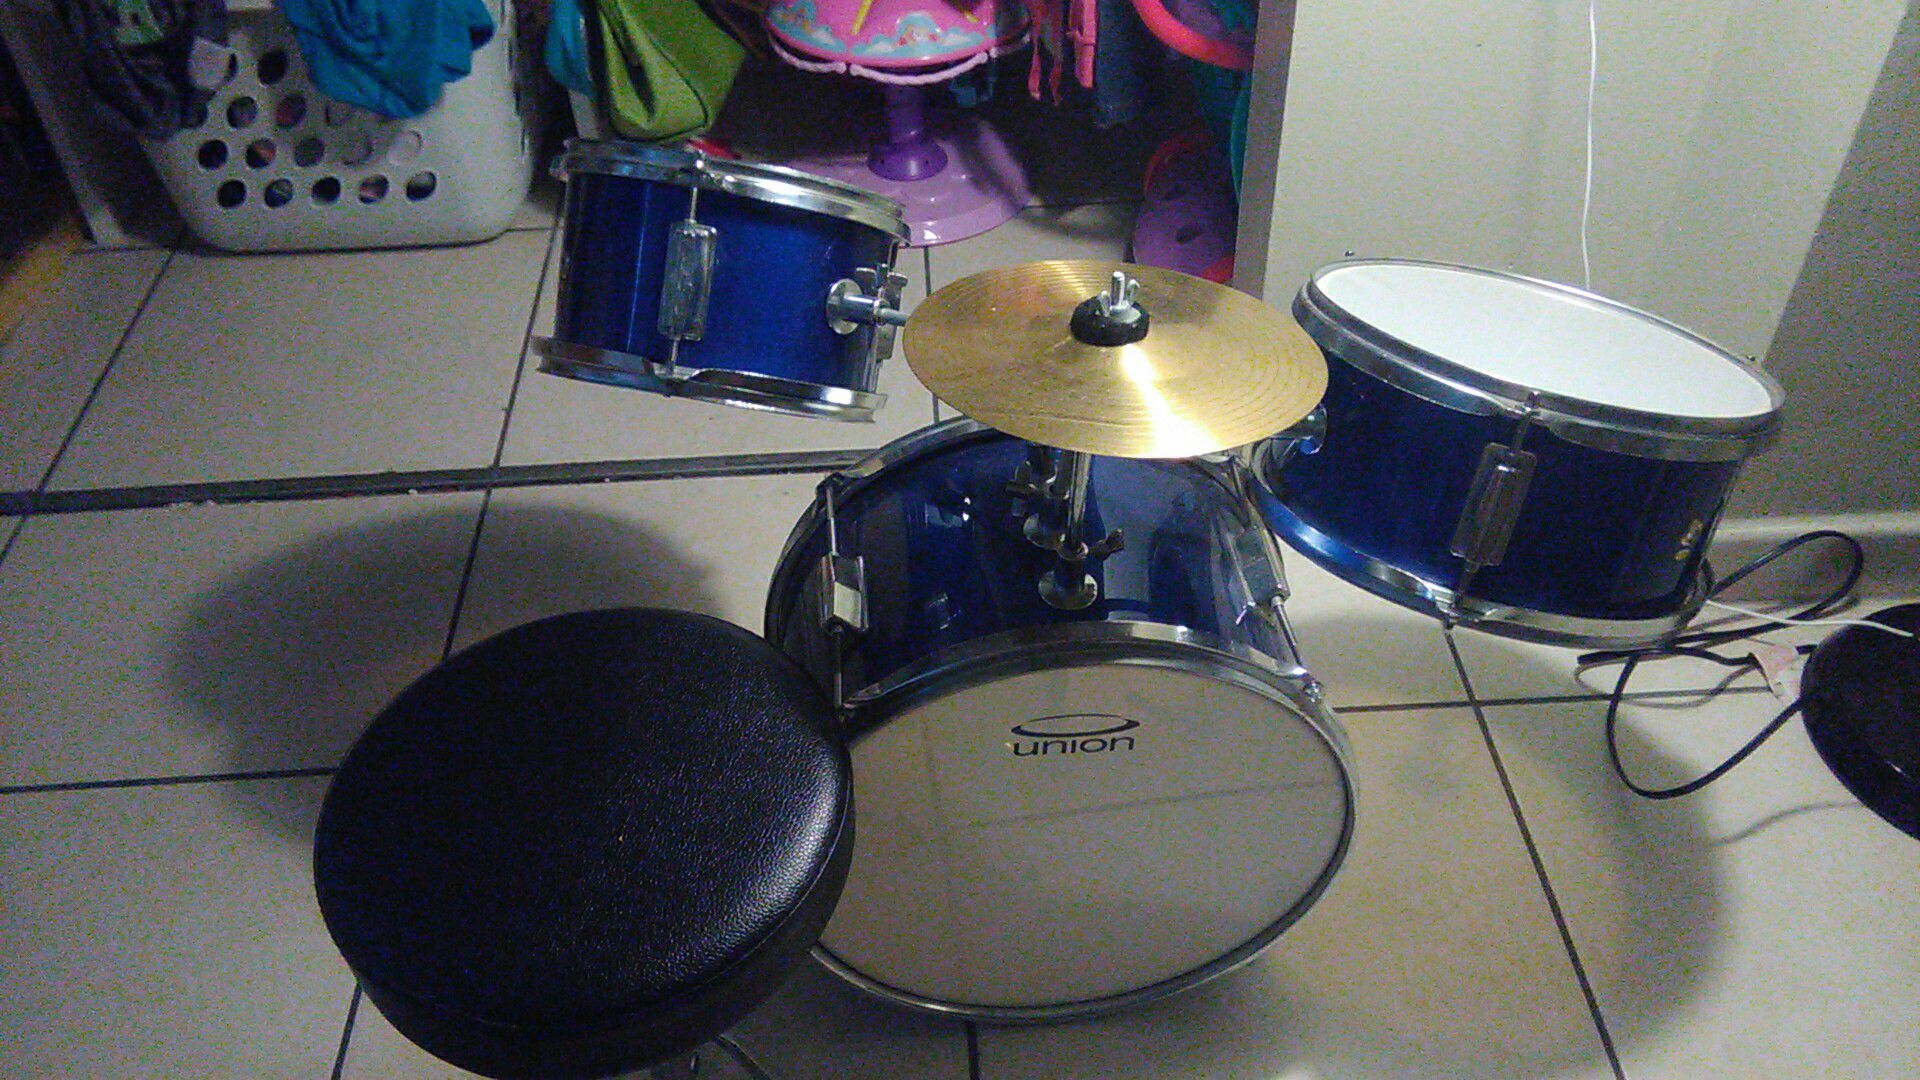 union 3 piece junior drum set